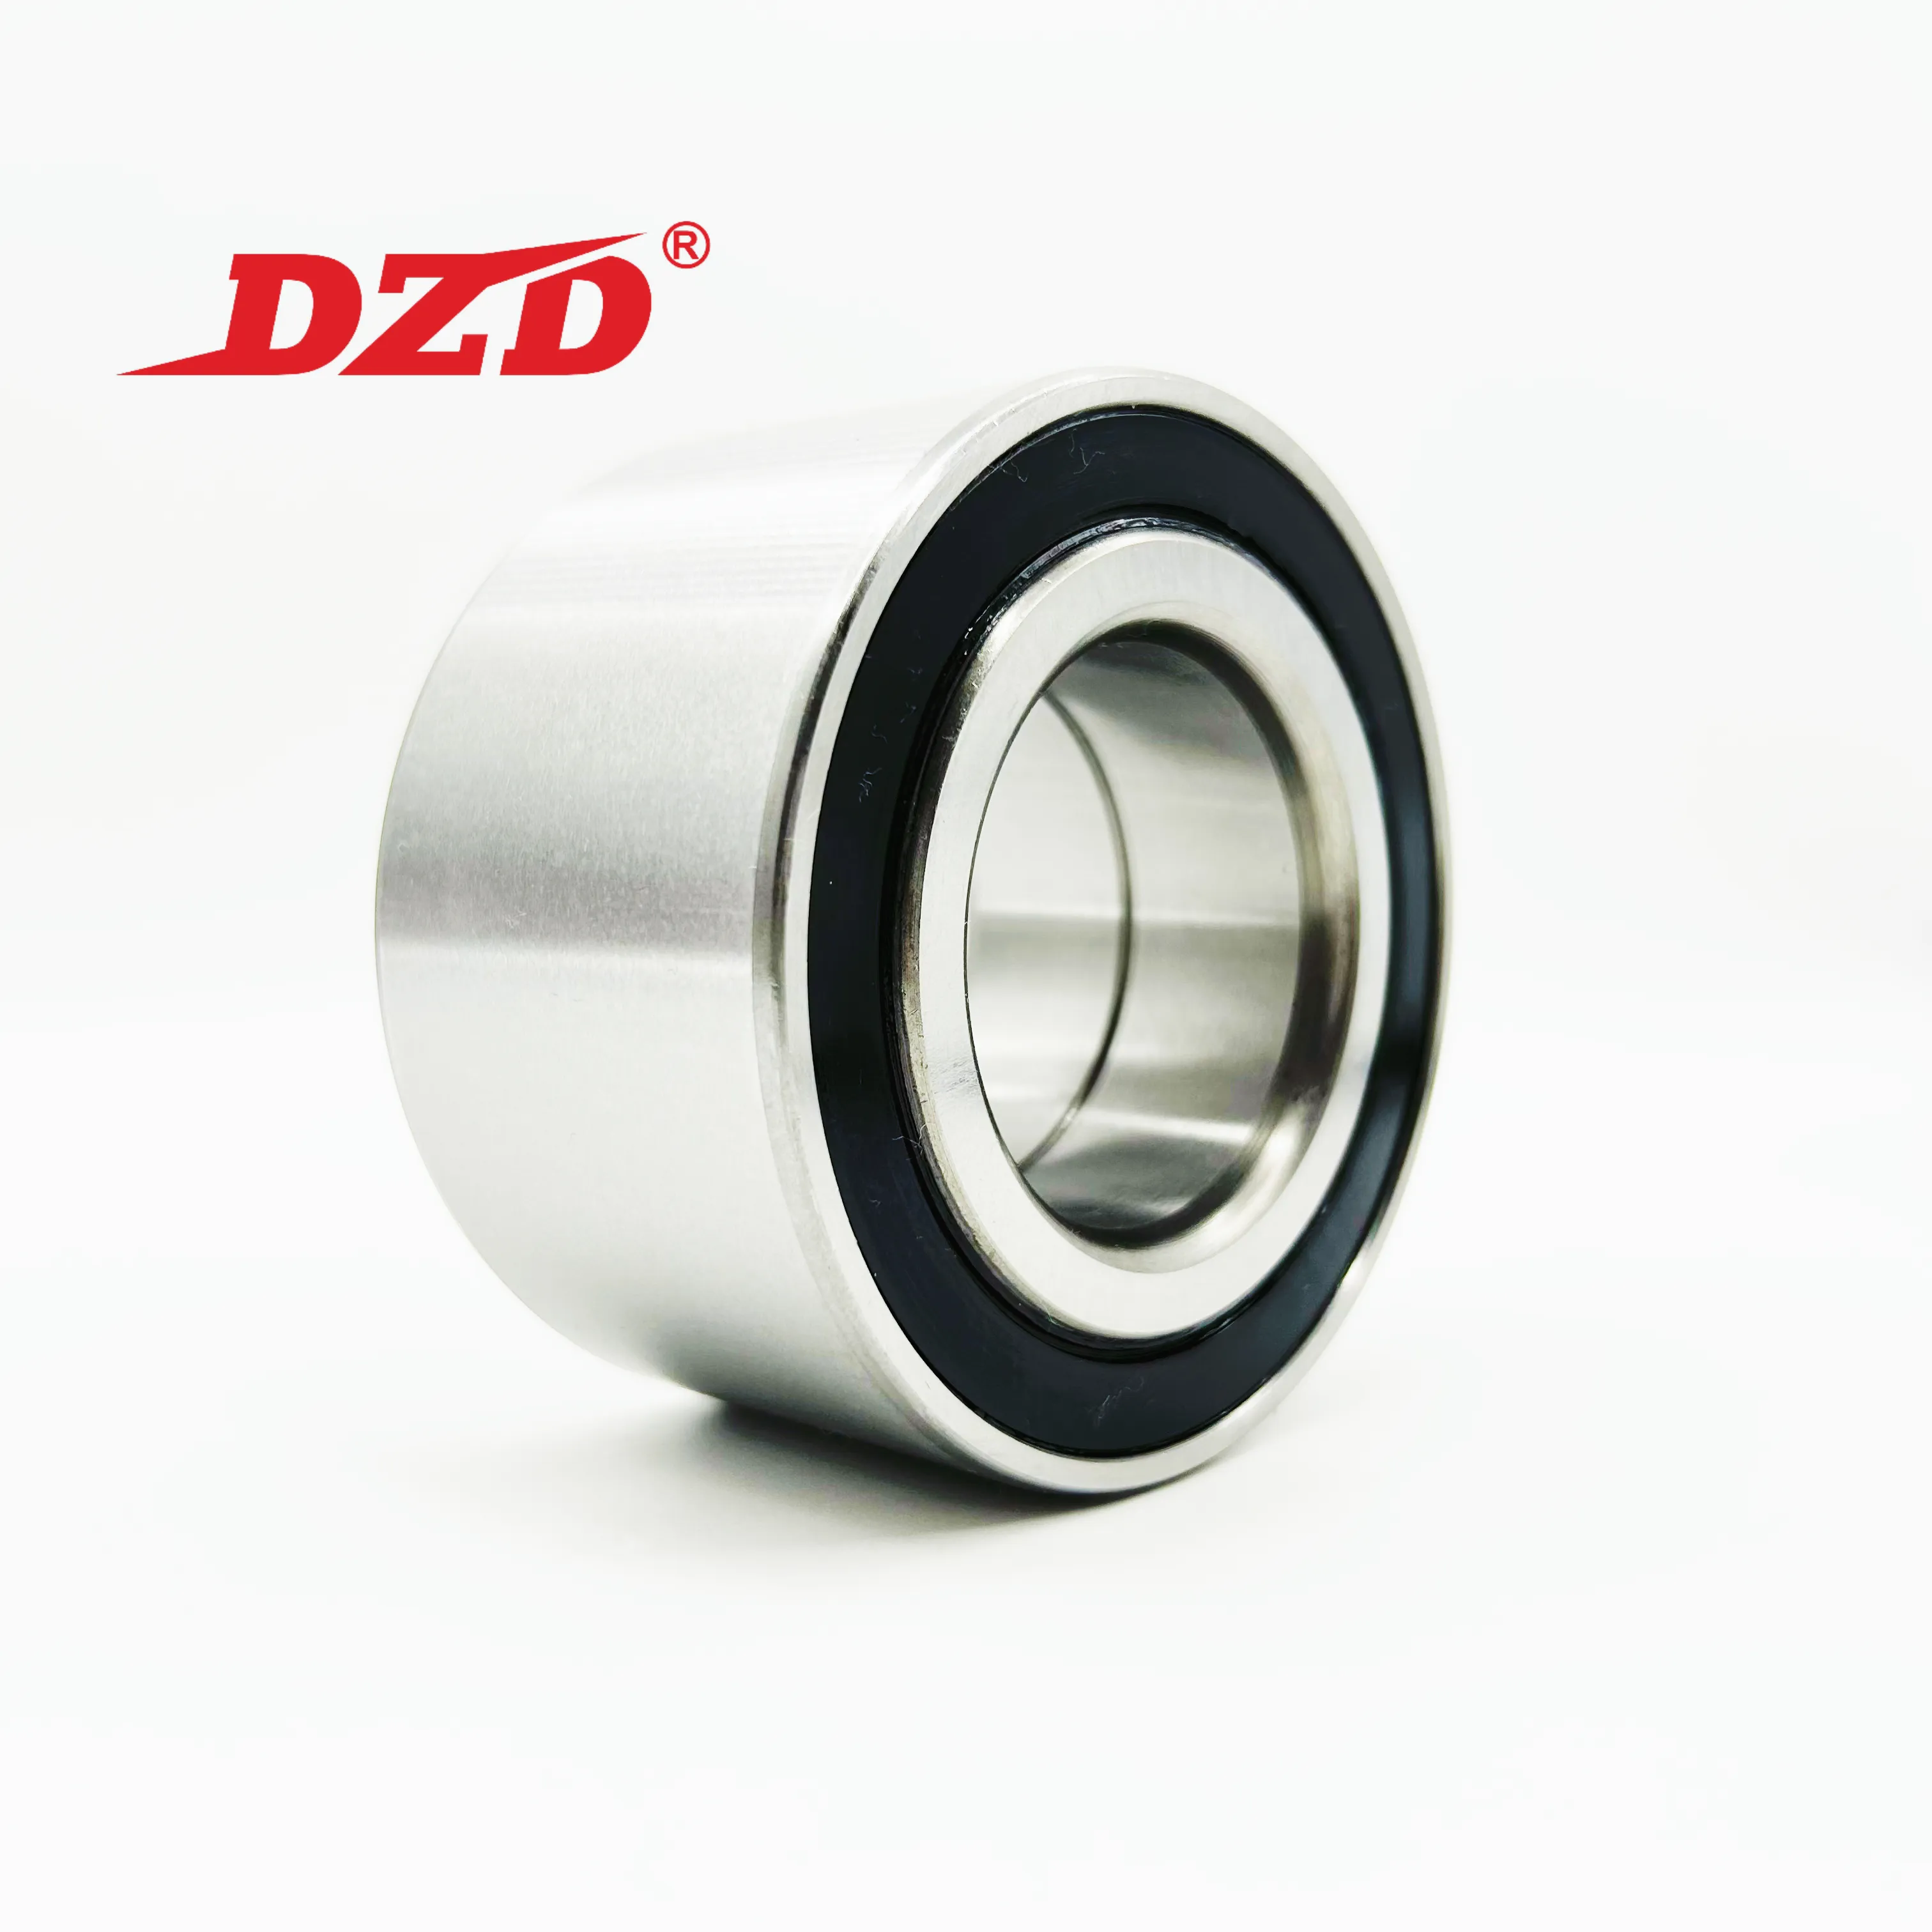 DZD Factory Automotive Bearing DAC37720337 DAC25520037 DAC30600037 DAC30600337 DAC30640042 Front Wheel Hub Bearing For Car